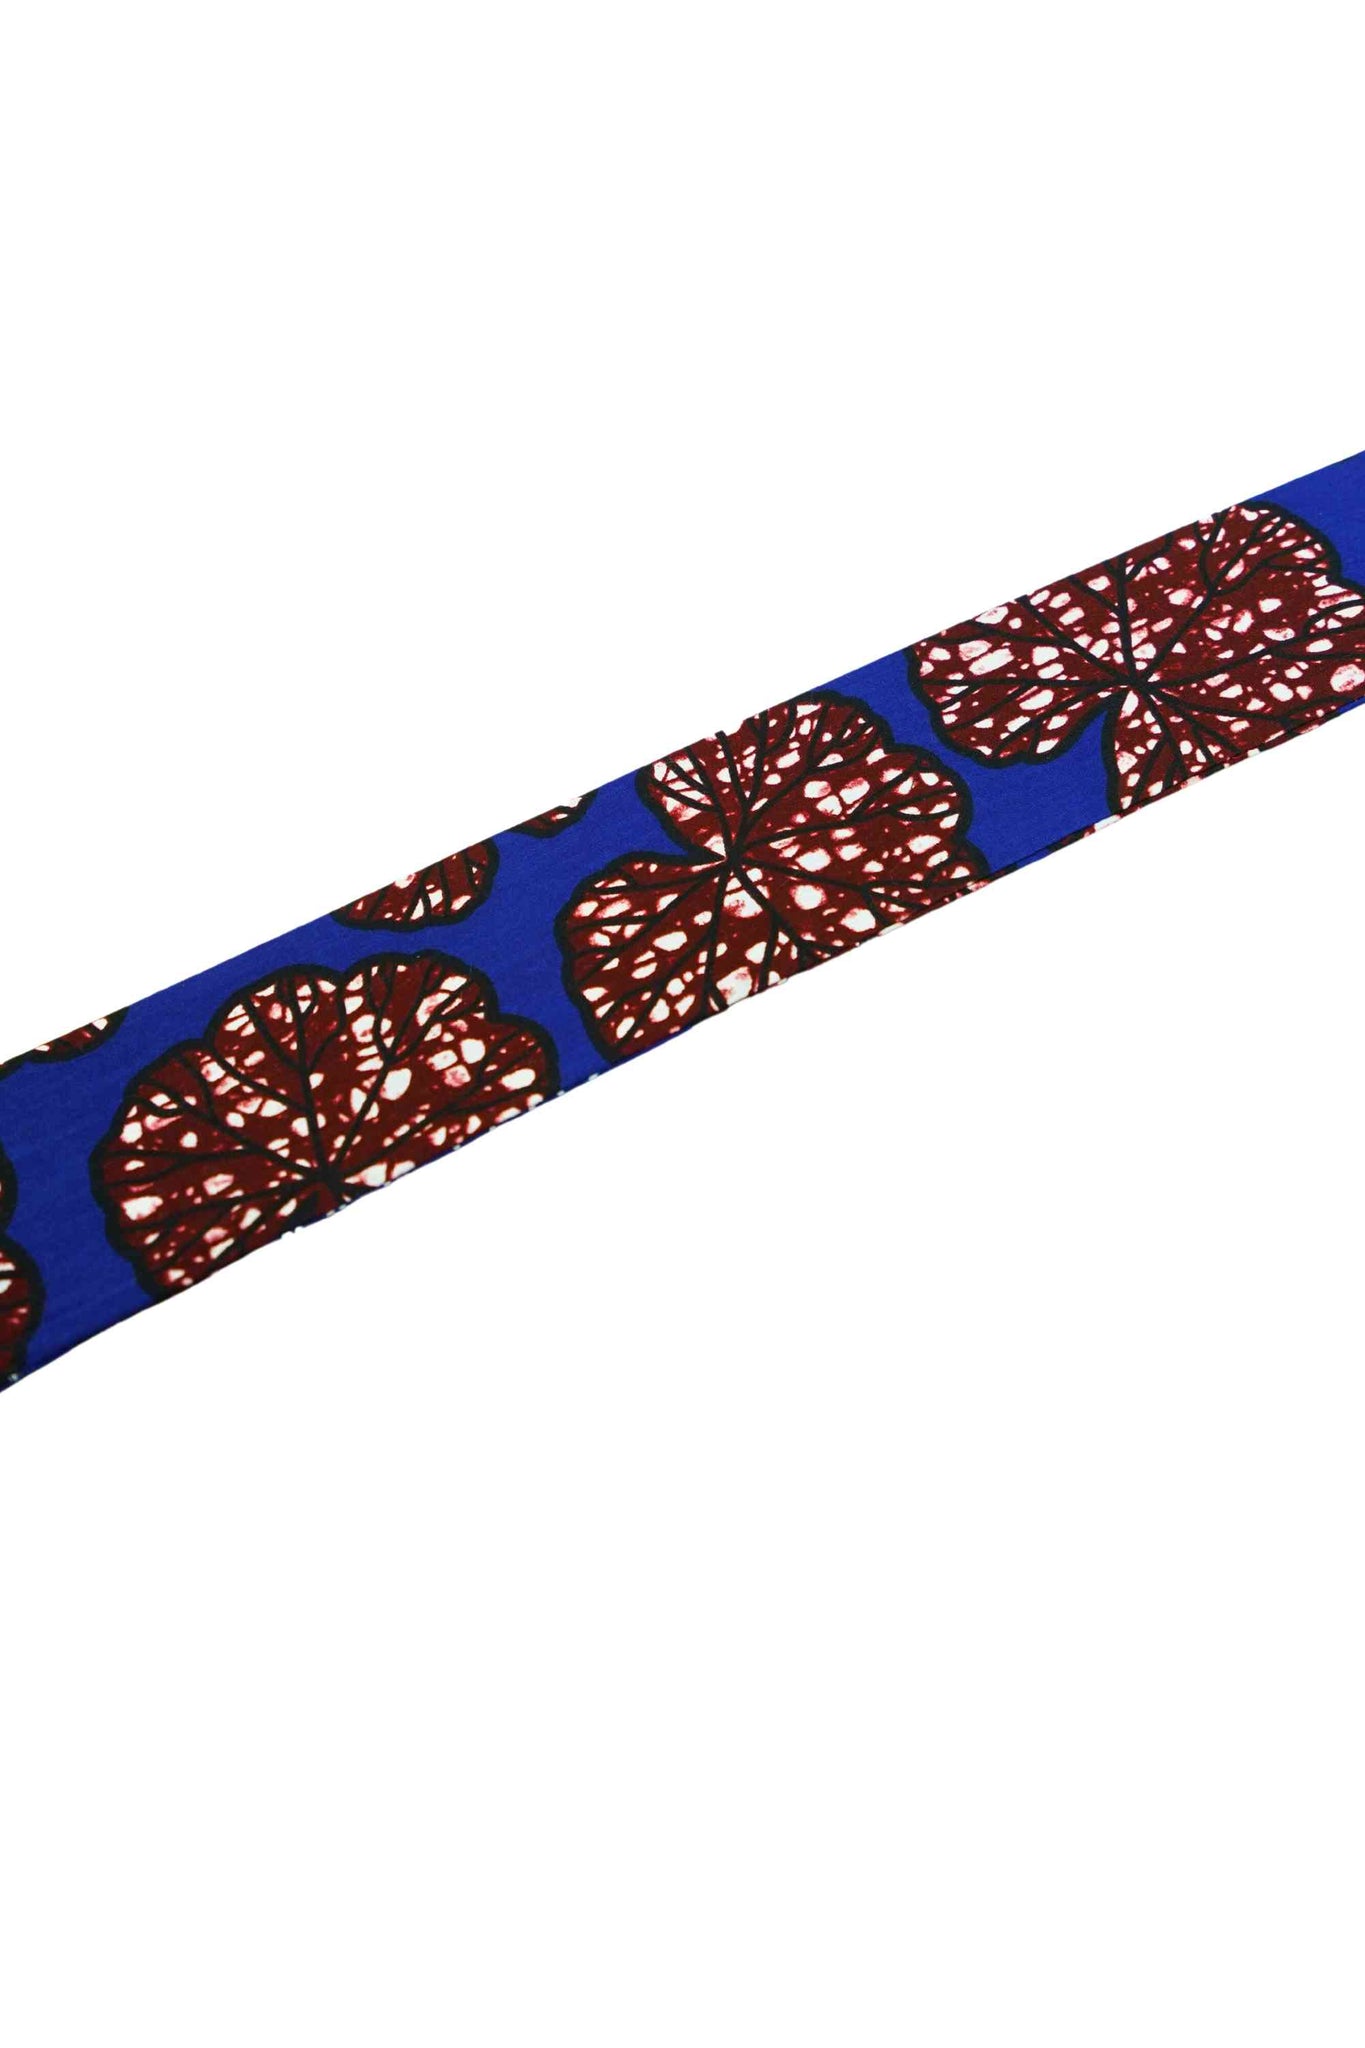 Blue / White / Brown Tie-Up Headband